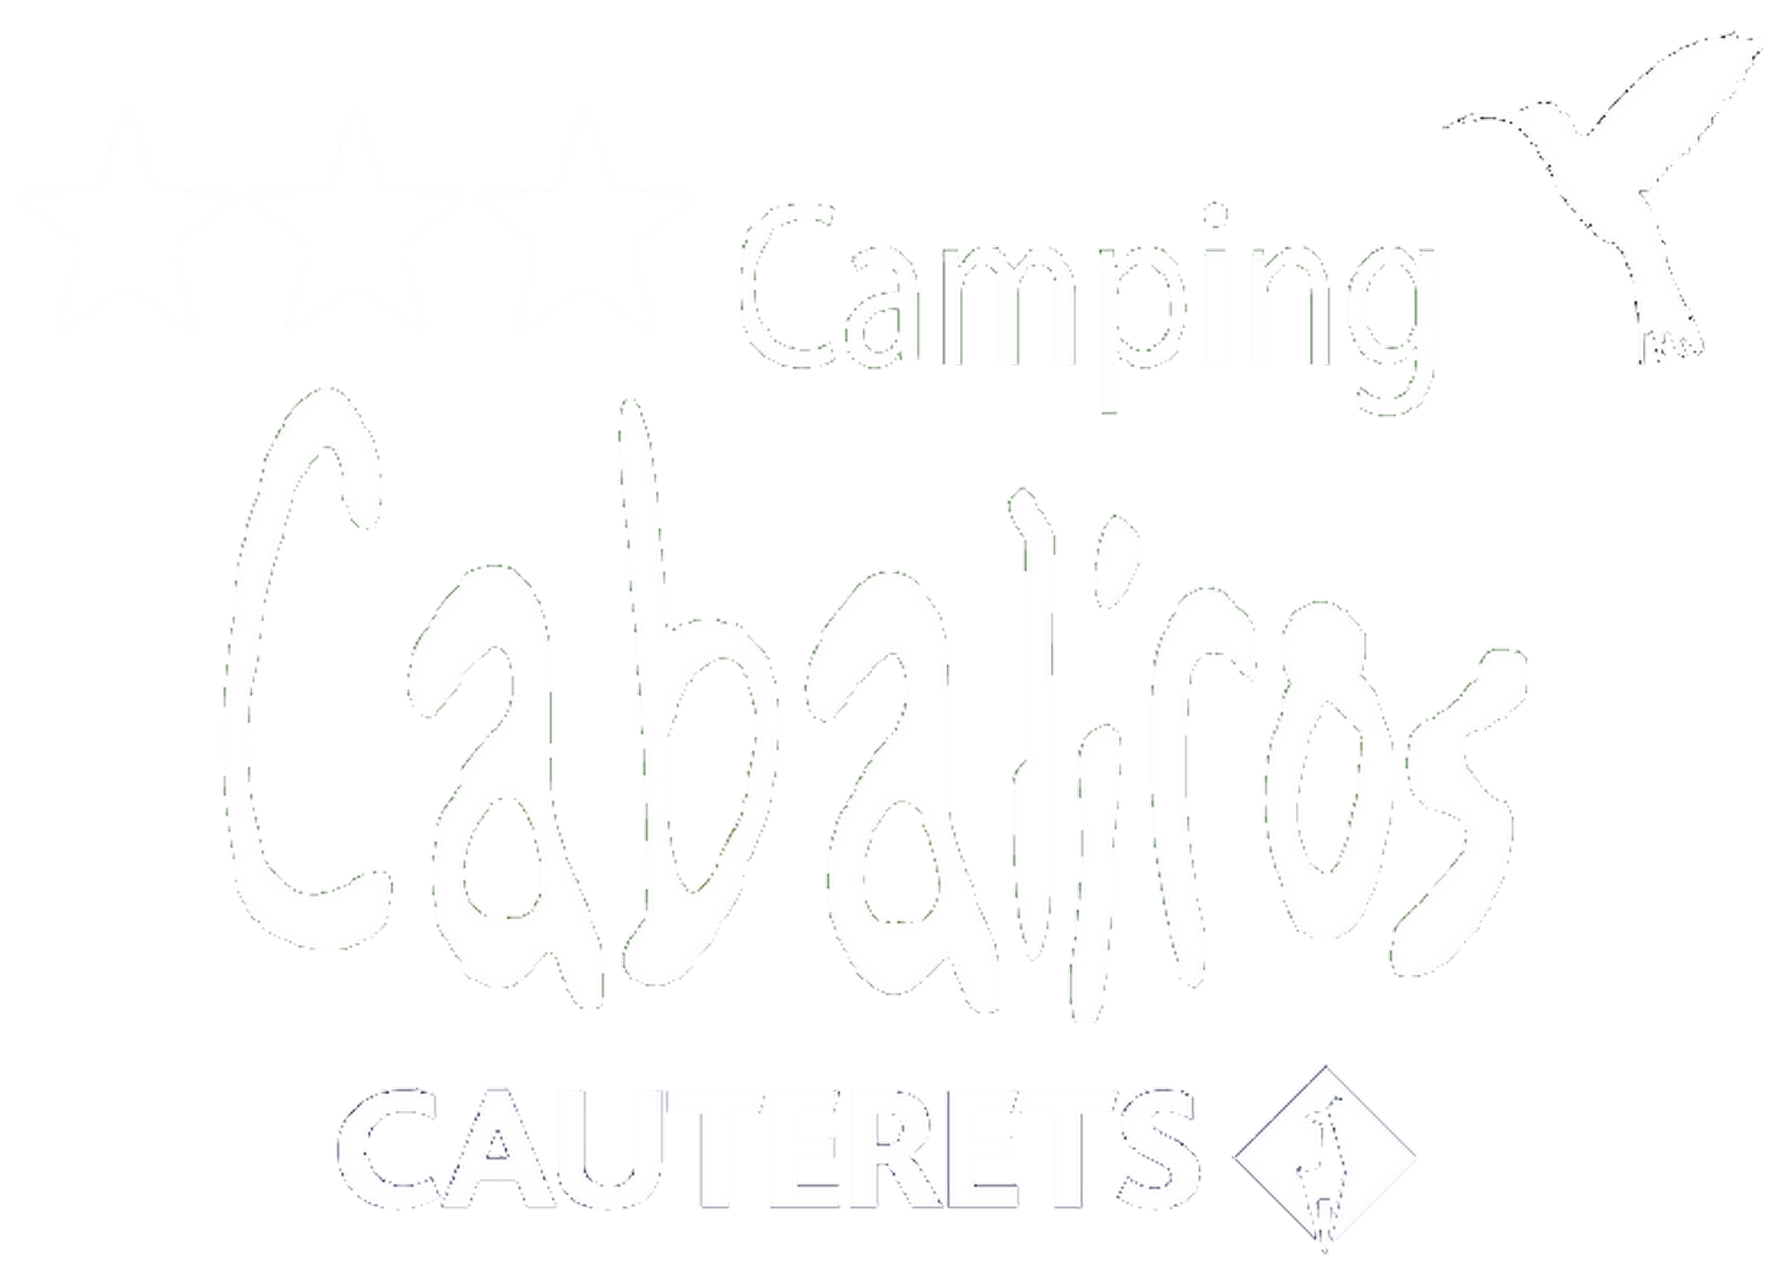 Camping Cabaliros Cauterets